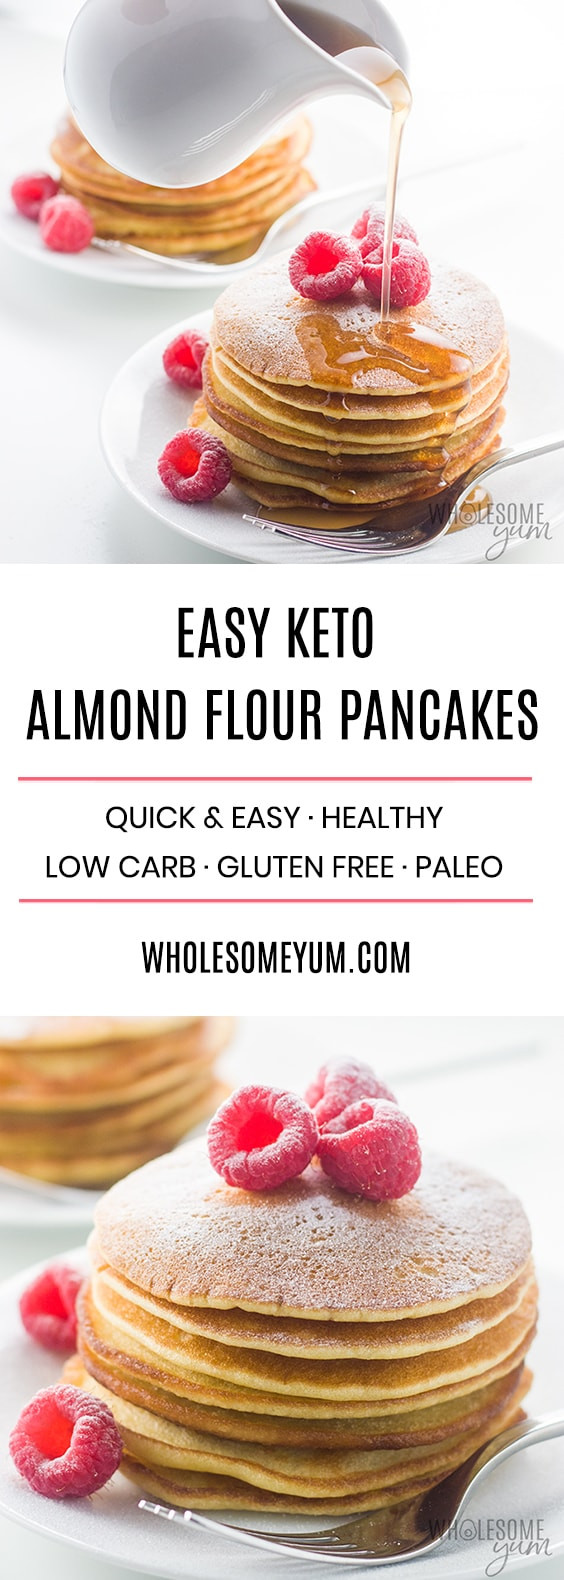 Almond Flour Pancakes Keto
 Easy Keto Almond Flour Pancakes Recipe